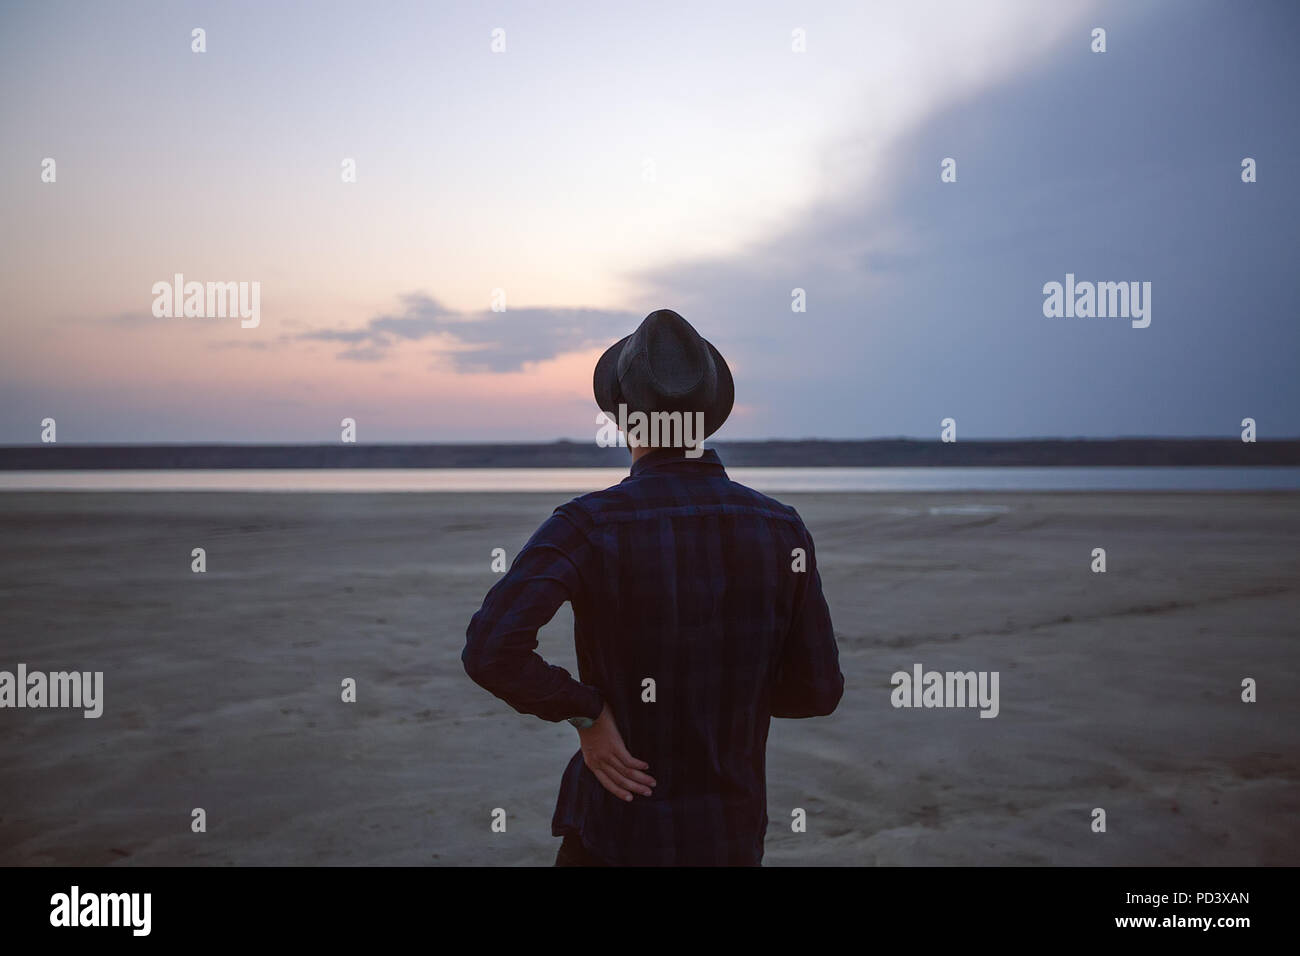 Man in hat on beach at sunset, Odessa, Ukraine Stock Photo